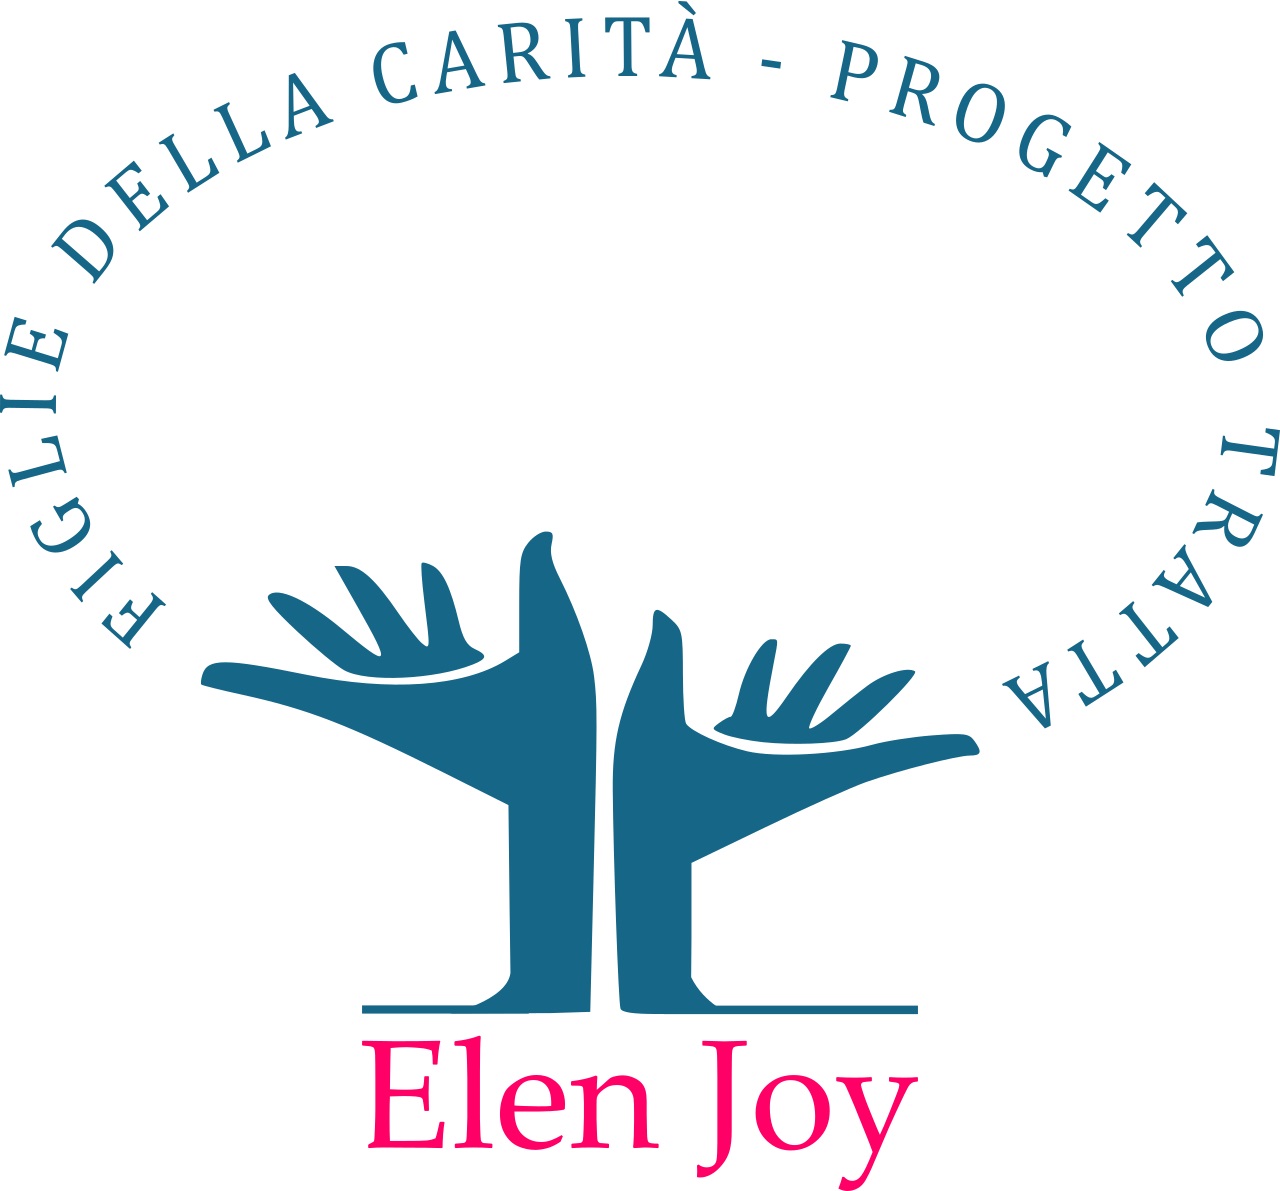 Congregazione Figlie della Carità - Progetto Elen Joy - - SARDEGNA - ITALIA